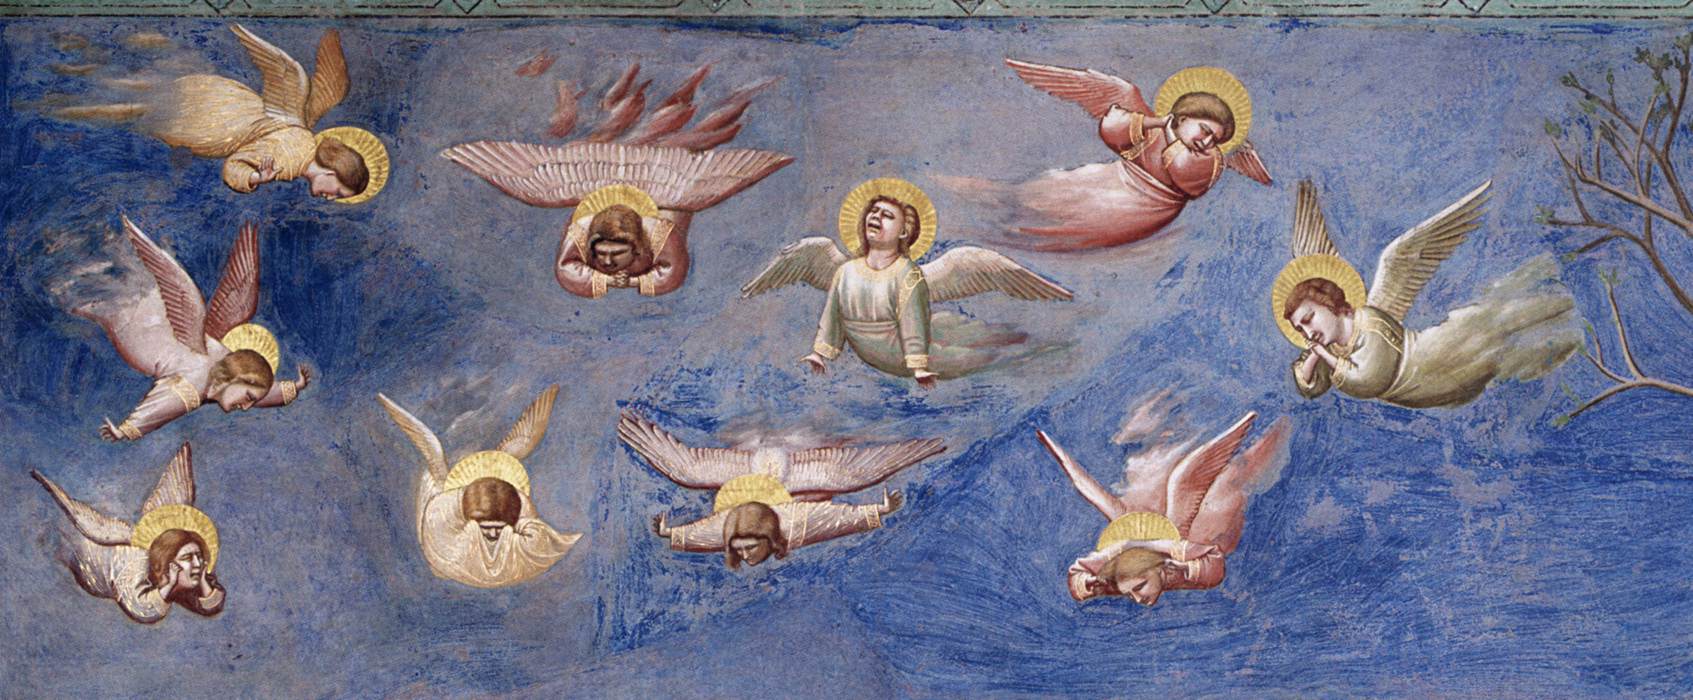 欧洲绘画之父乔托笔下的耶稣生平壁画(下)斯克罗维尼礼拜堂